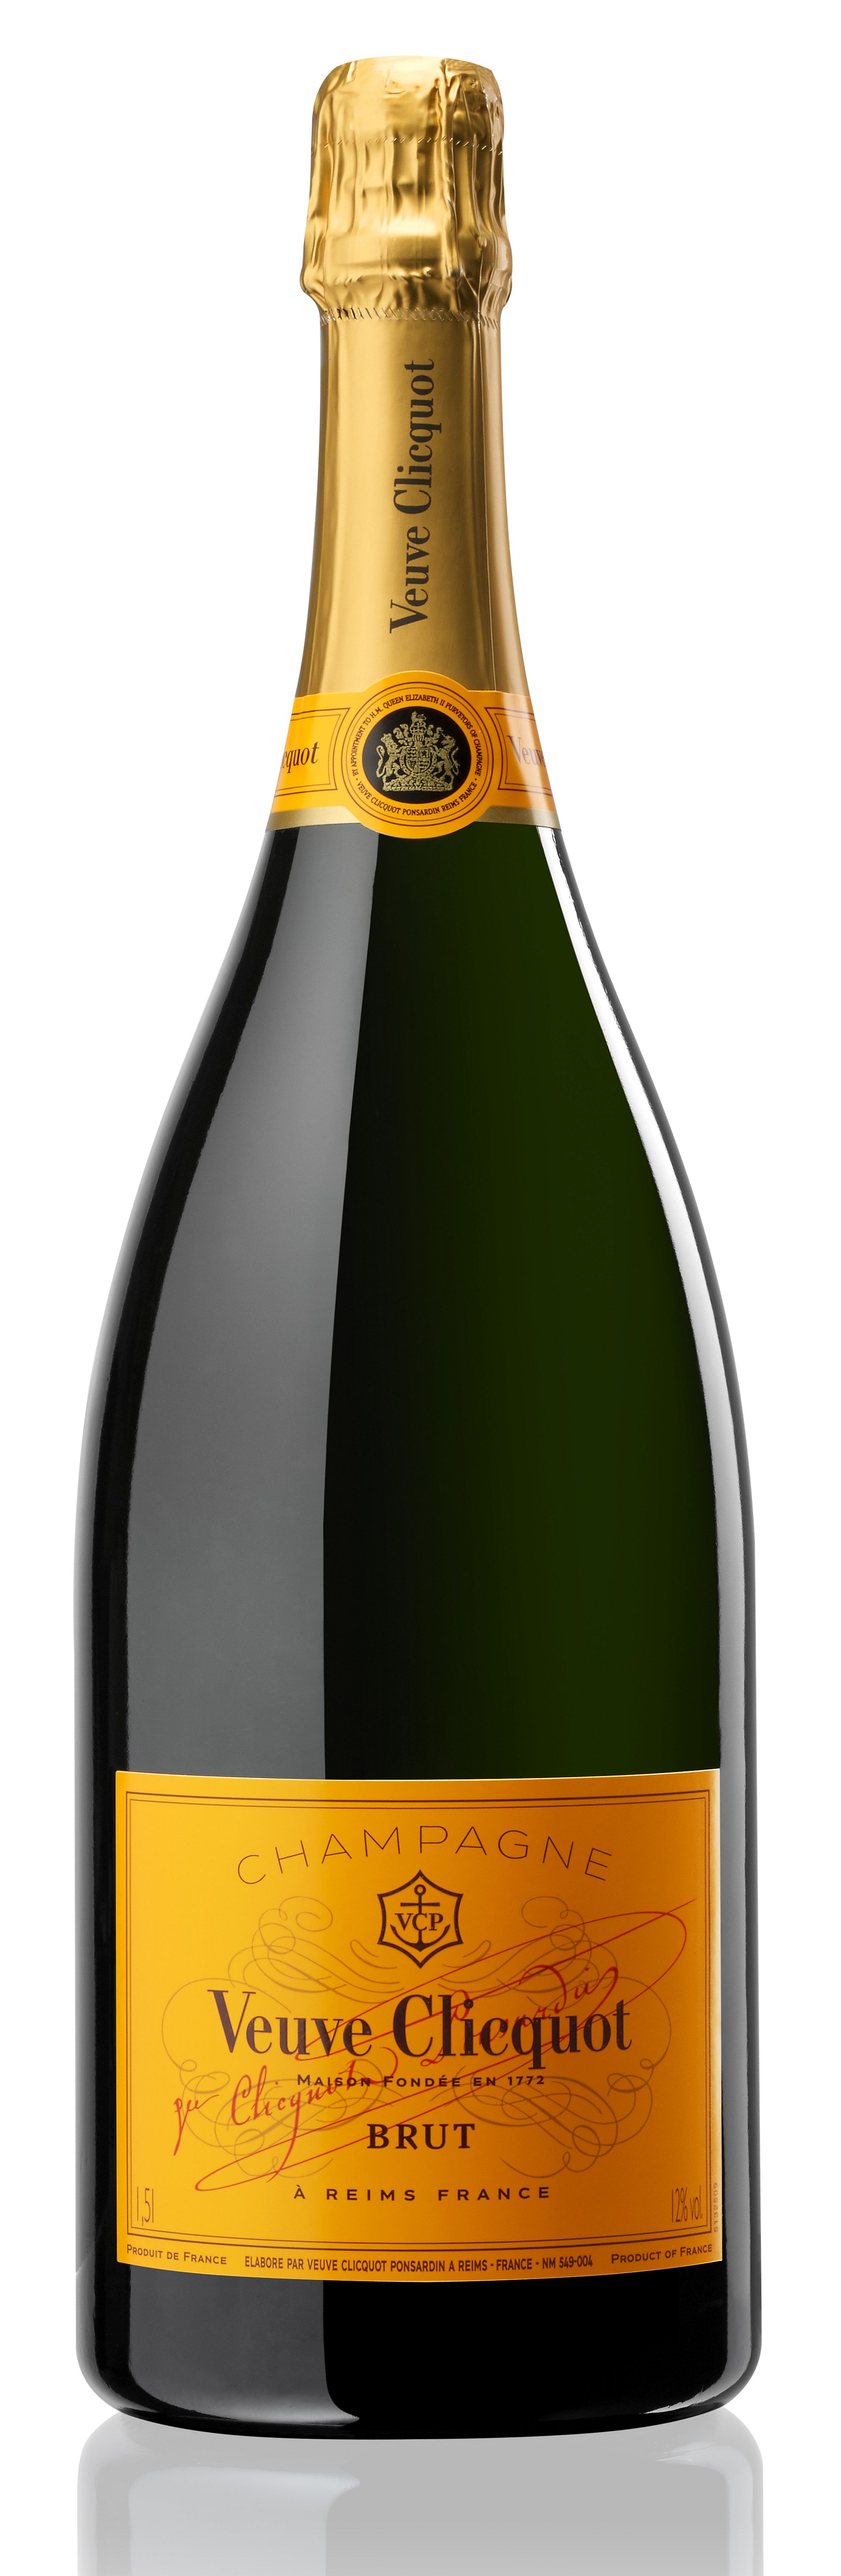 Co Champagner, | MAGNUM Weine | | Champagner Sekt Champagner brut Veuve & Clicquot Orthmann